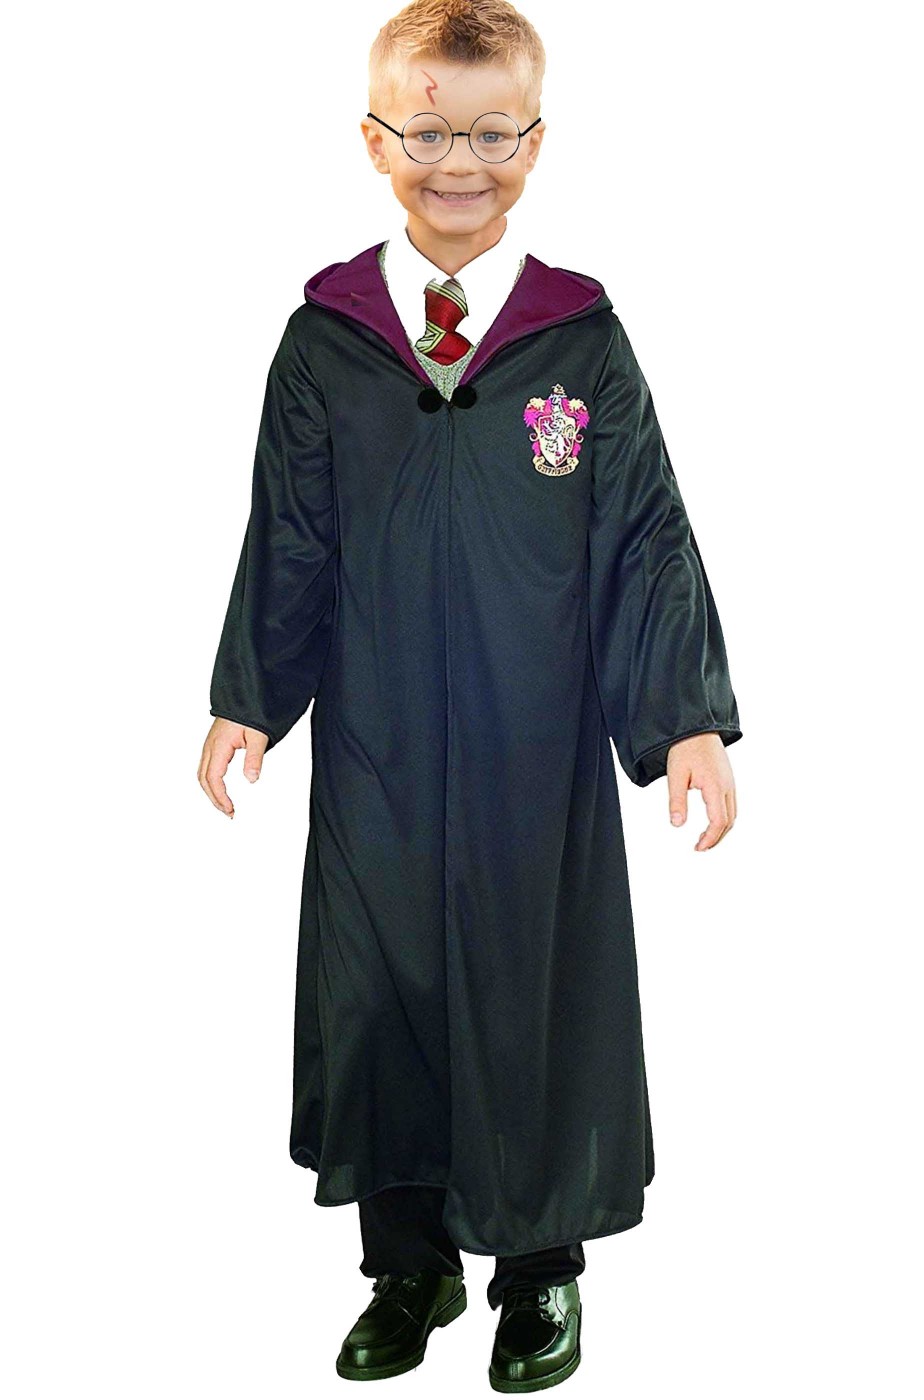 Vestito di carnevale Harry Potter bambino economico